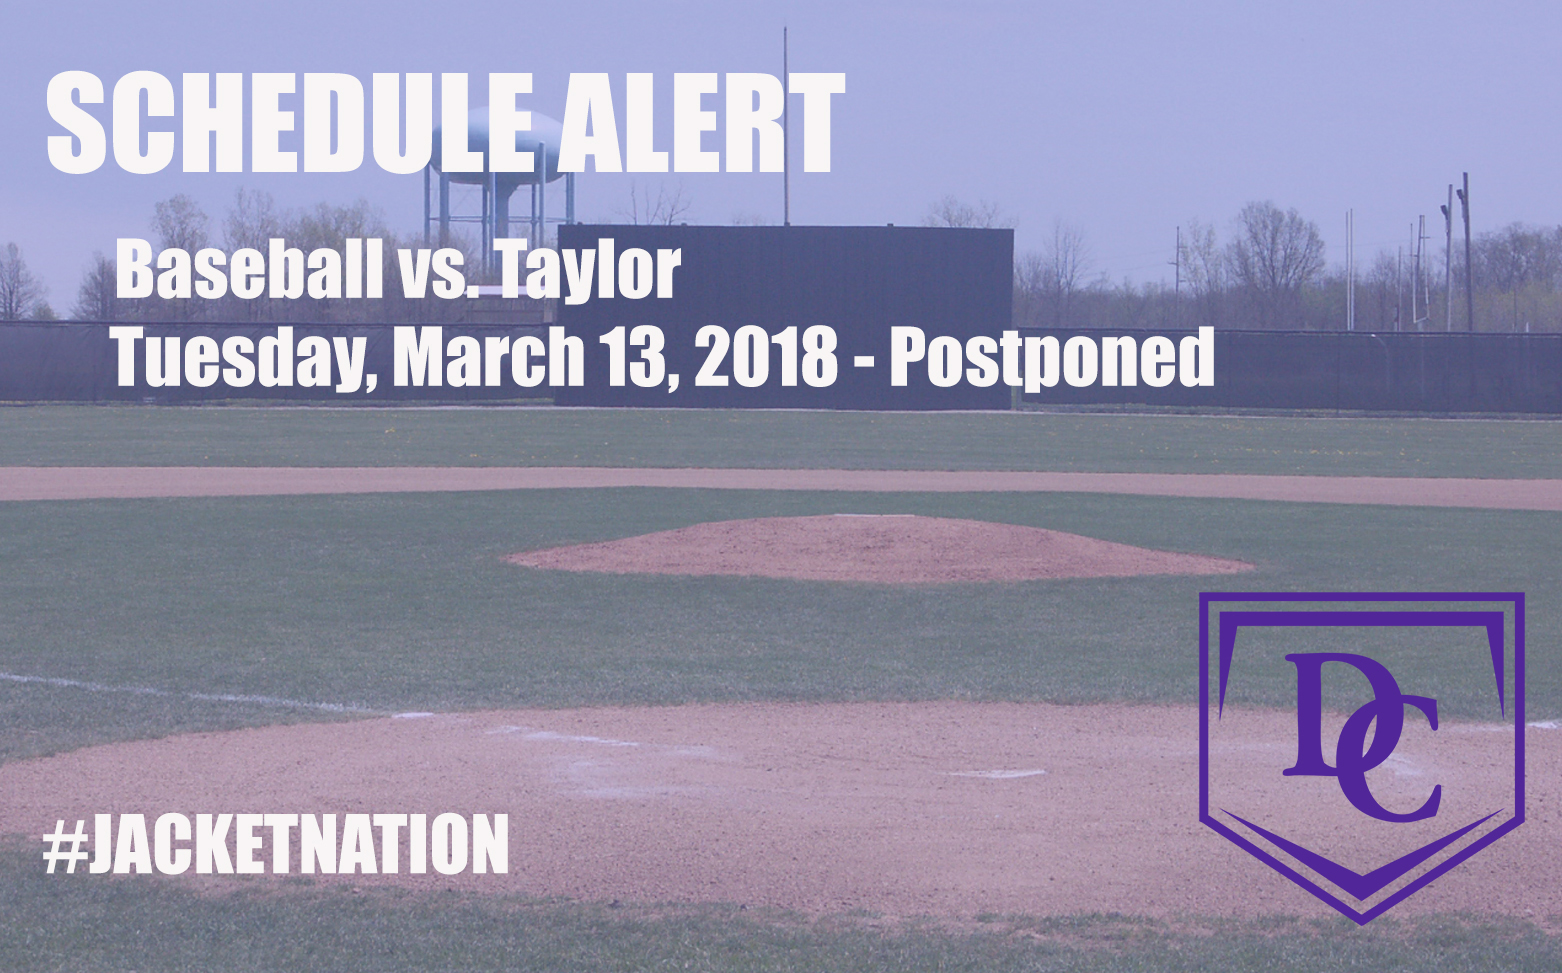 Baseball Doubleheader at Taylor Postponed